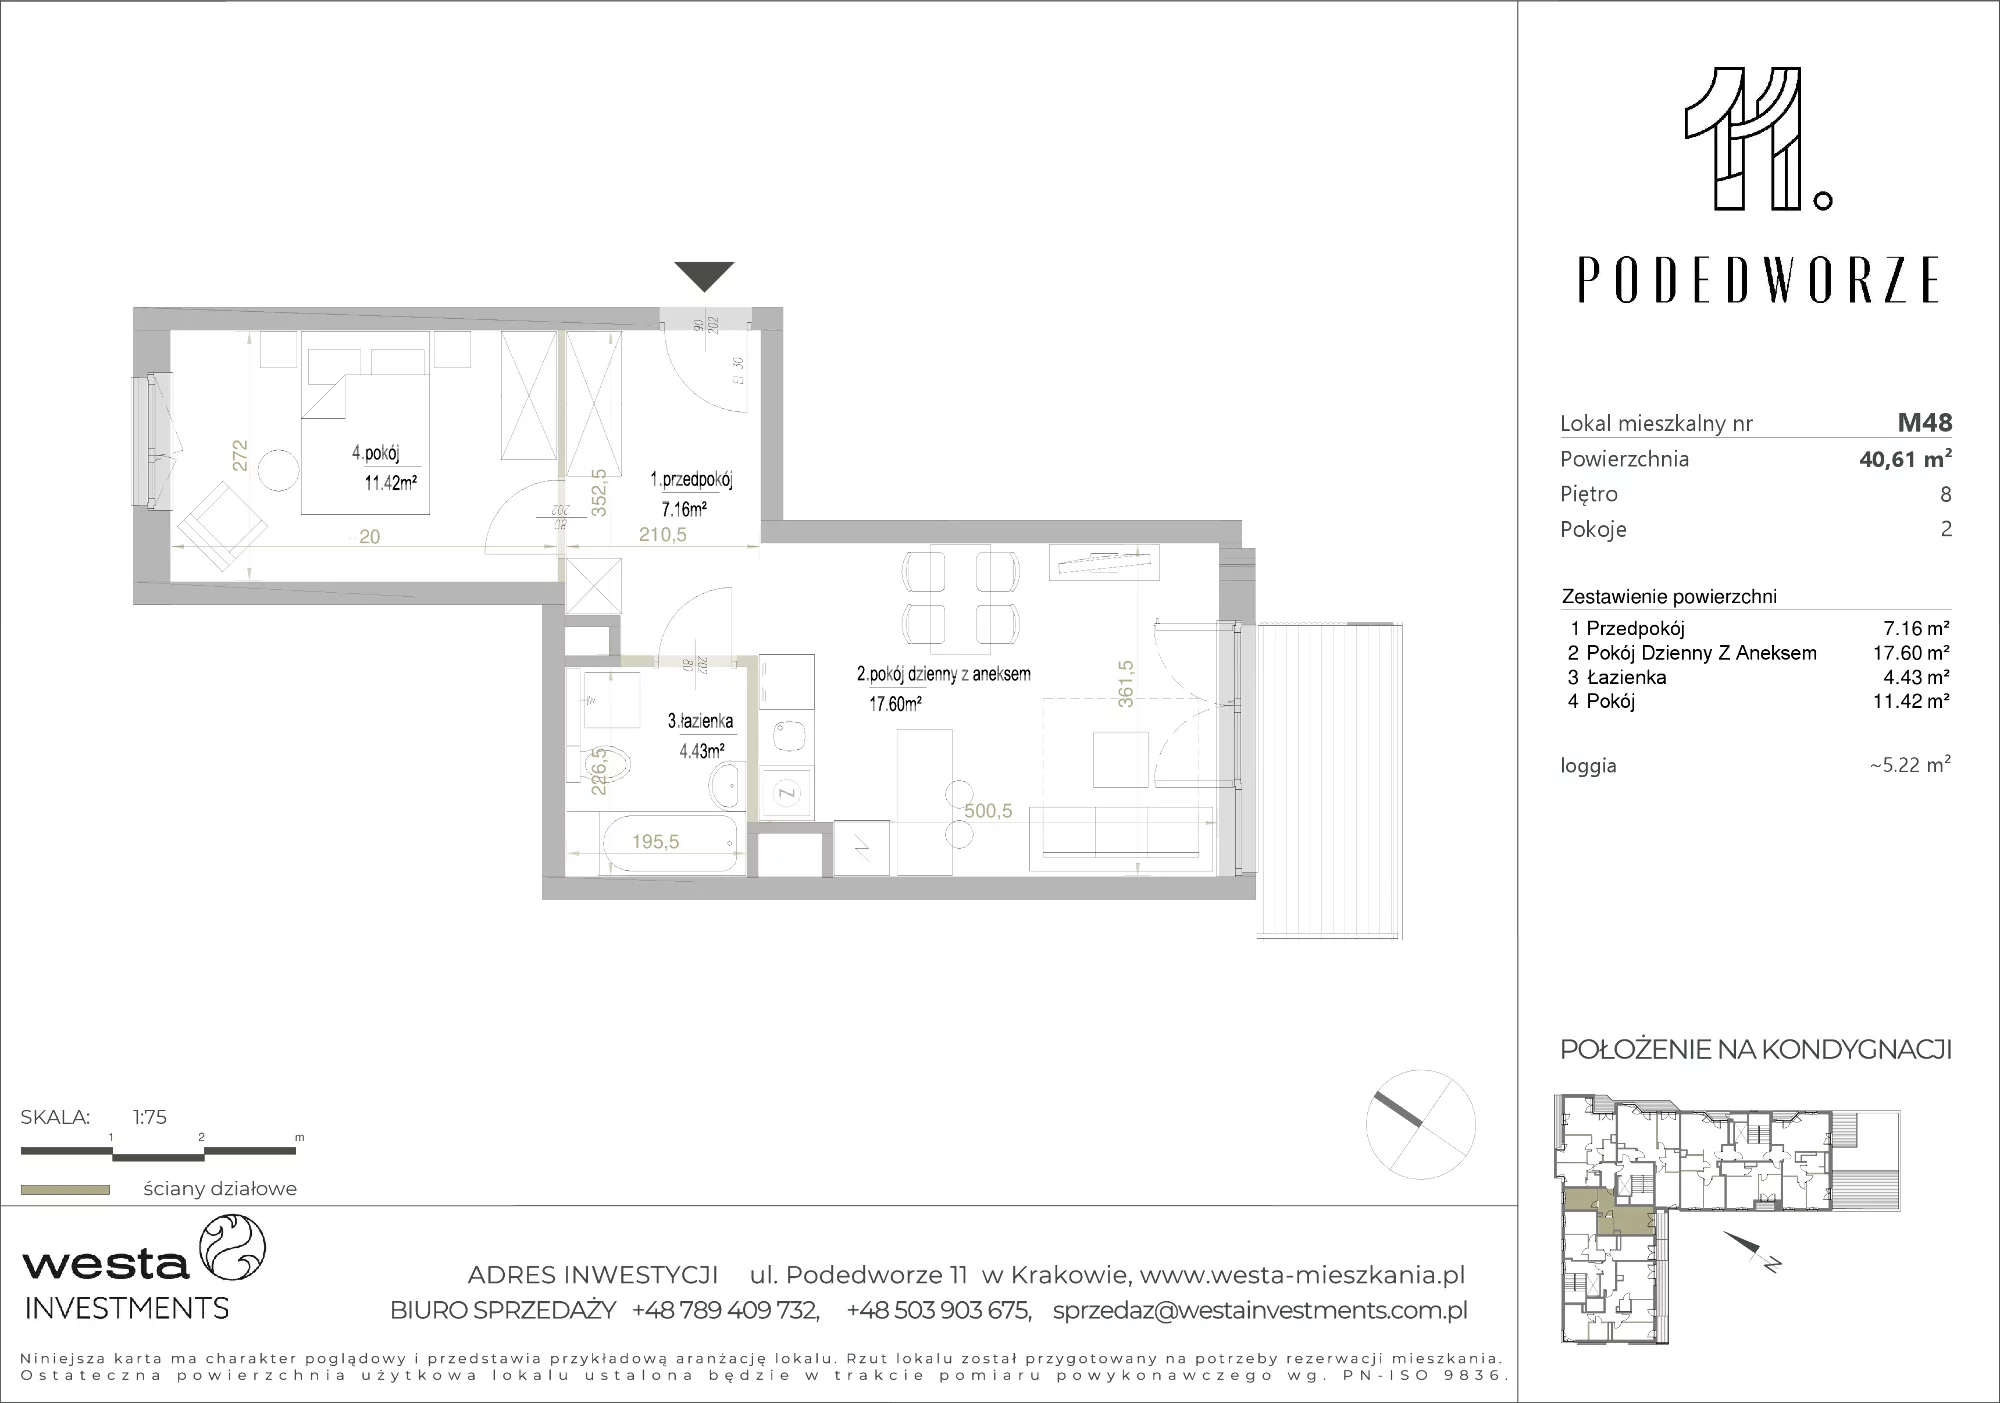 Mieszkanie 40,61 m², piętro 8, oferta nr 48, Podedworze 11, Kraków, Podgórze Duchackie, Piaski Wielkie, ul. Podedworze 11